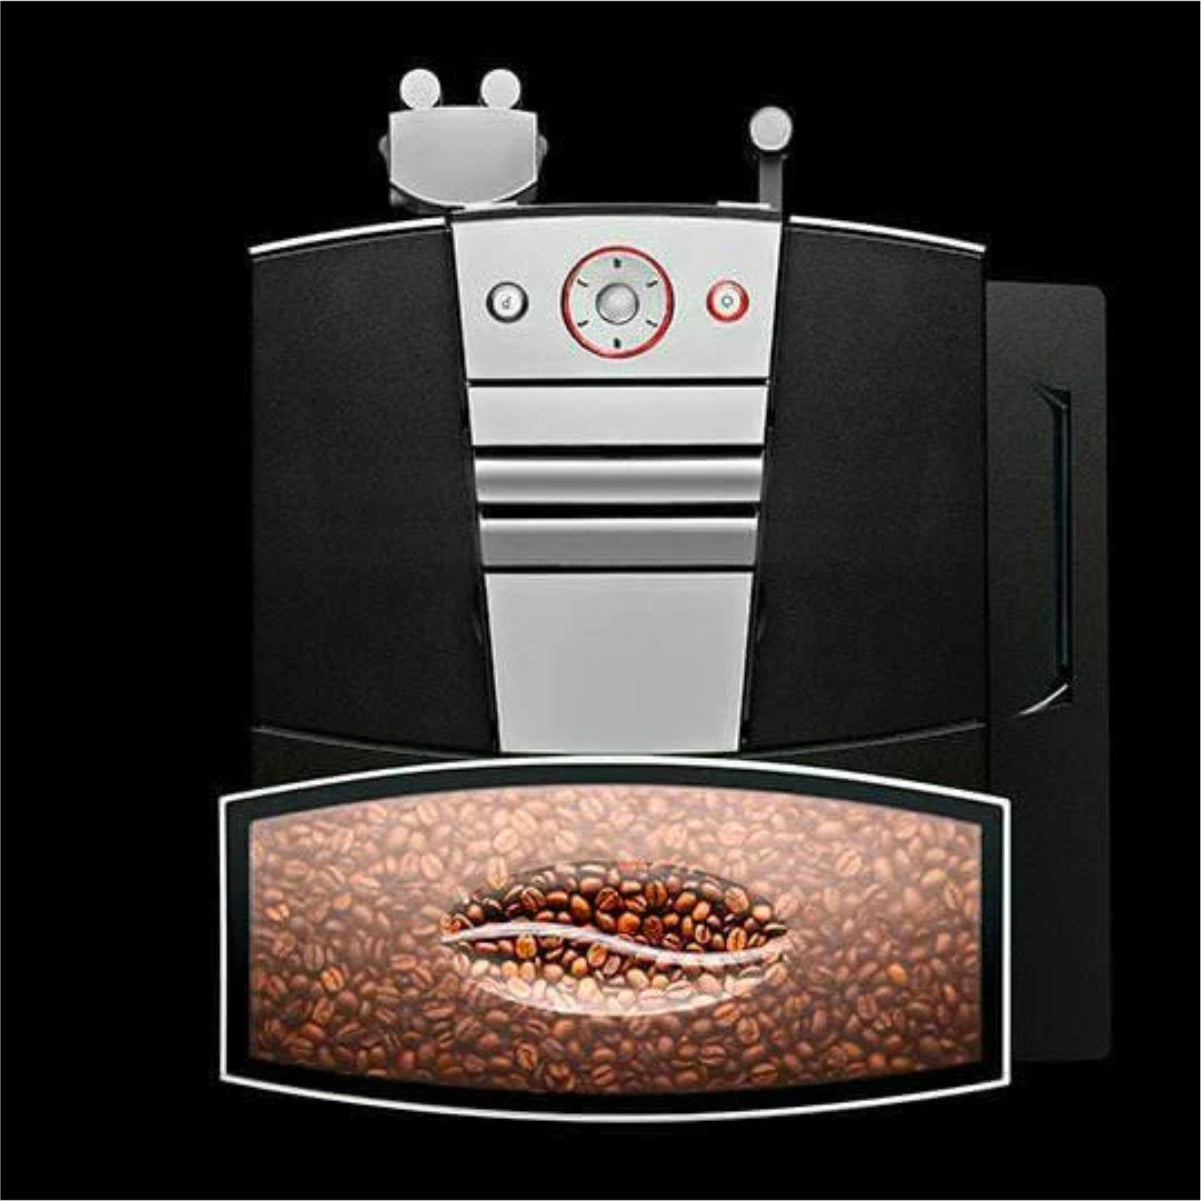 Jura GIGA W3 Automatic Espresso Machine (Aluminium)